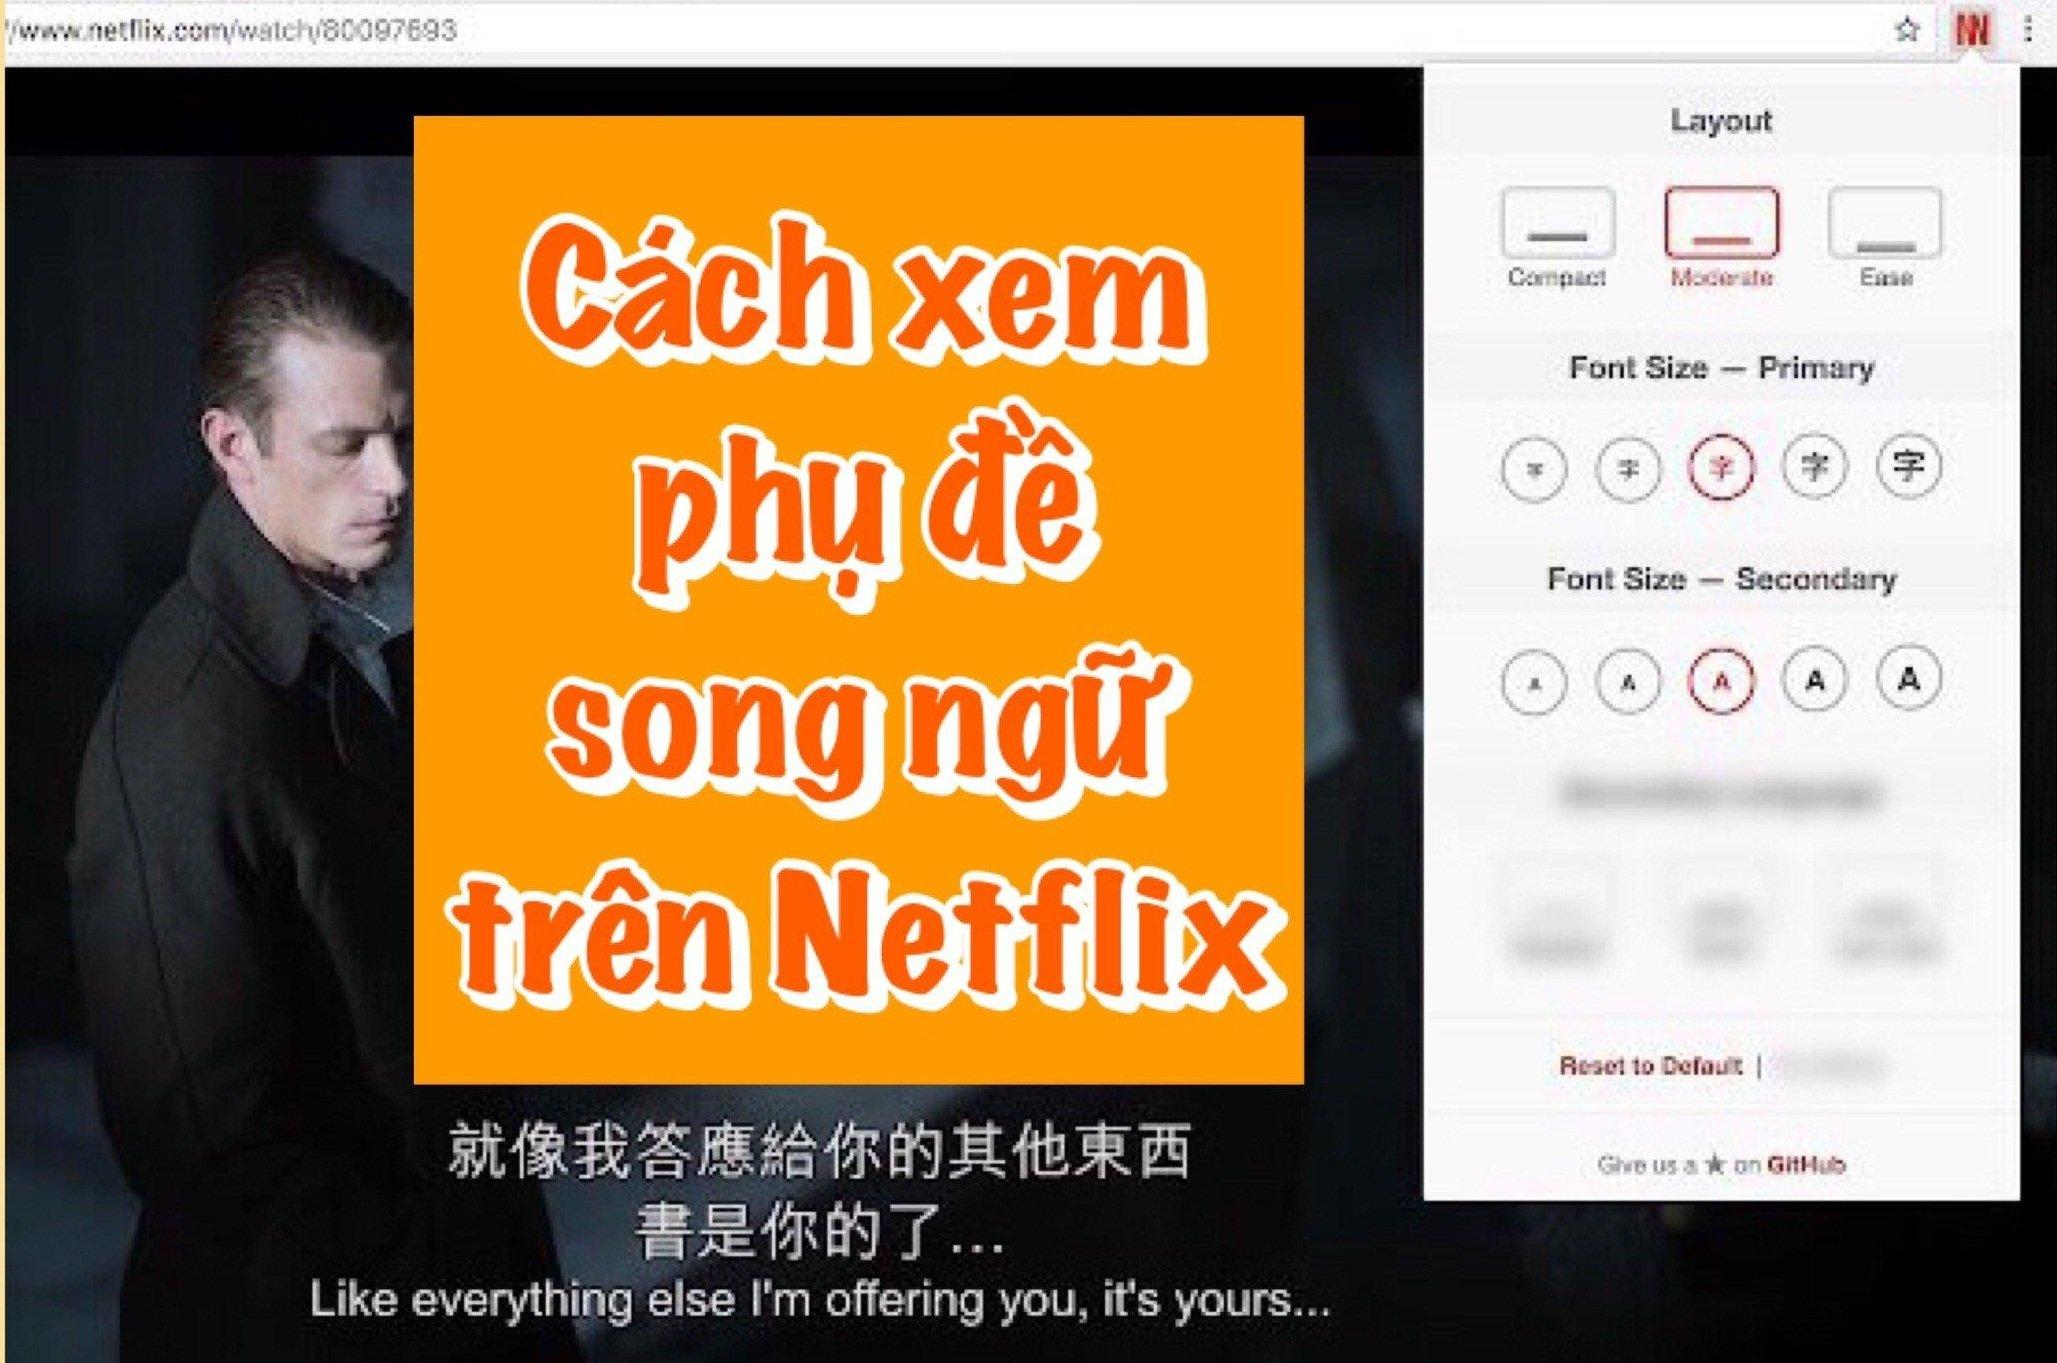 Phim Netflix - sản xuất tại Việt Nam: Netflix đã chính thức công bố sắp cho ra mắt các bộ phim do các đạo diễn, diễn viên tài năng Việt Nam sản xuất. Điều này không chỉ mang lại cơ hội cho những người nghệ sĩ Việt Nam thể hiện tài năng của mình, mà còn giúp phát triển ngành công nghiệp phim nước nhà.